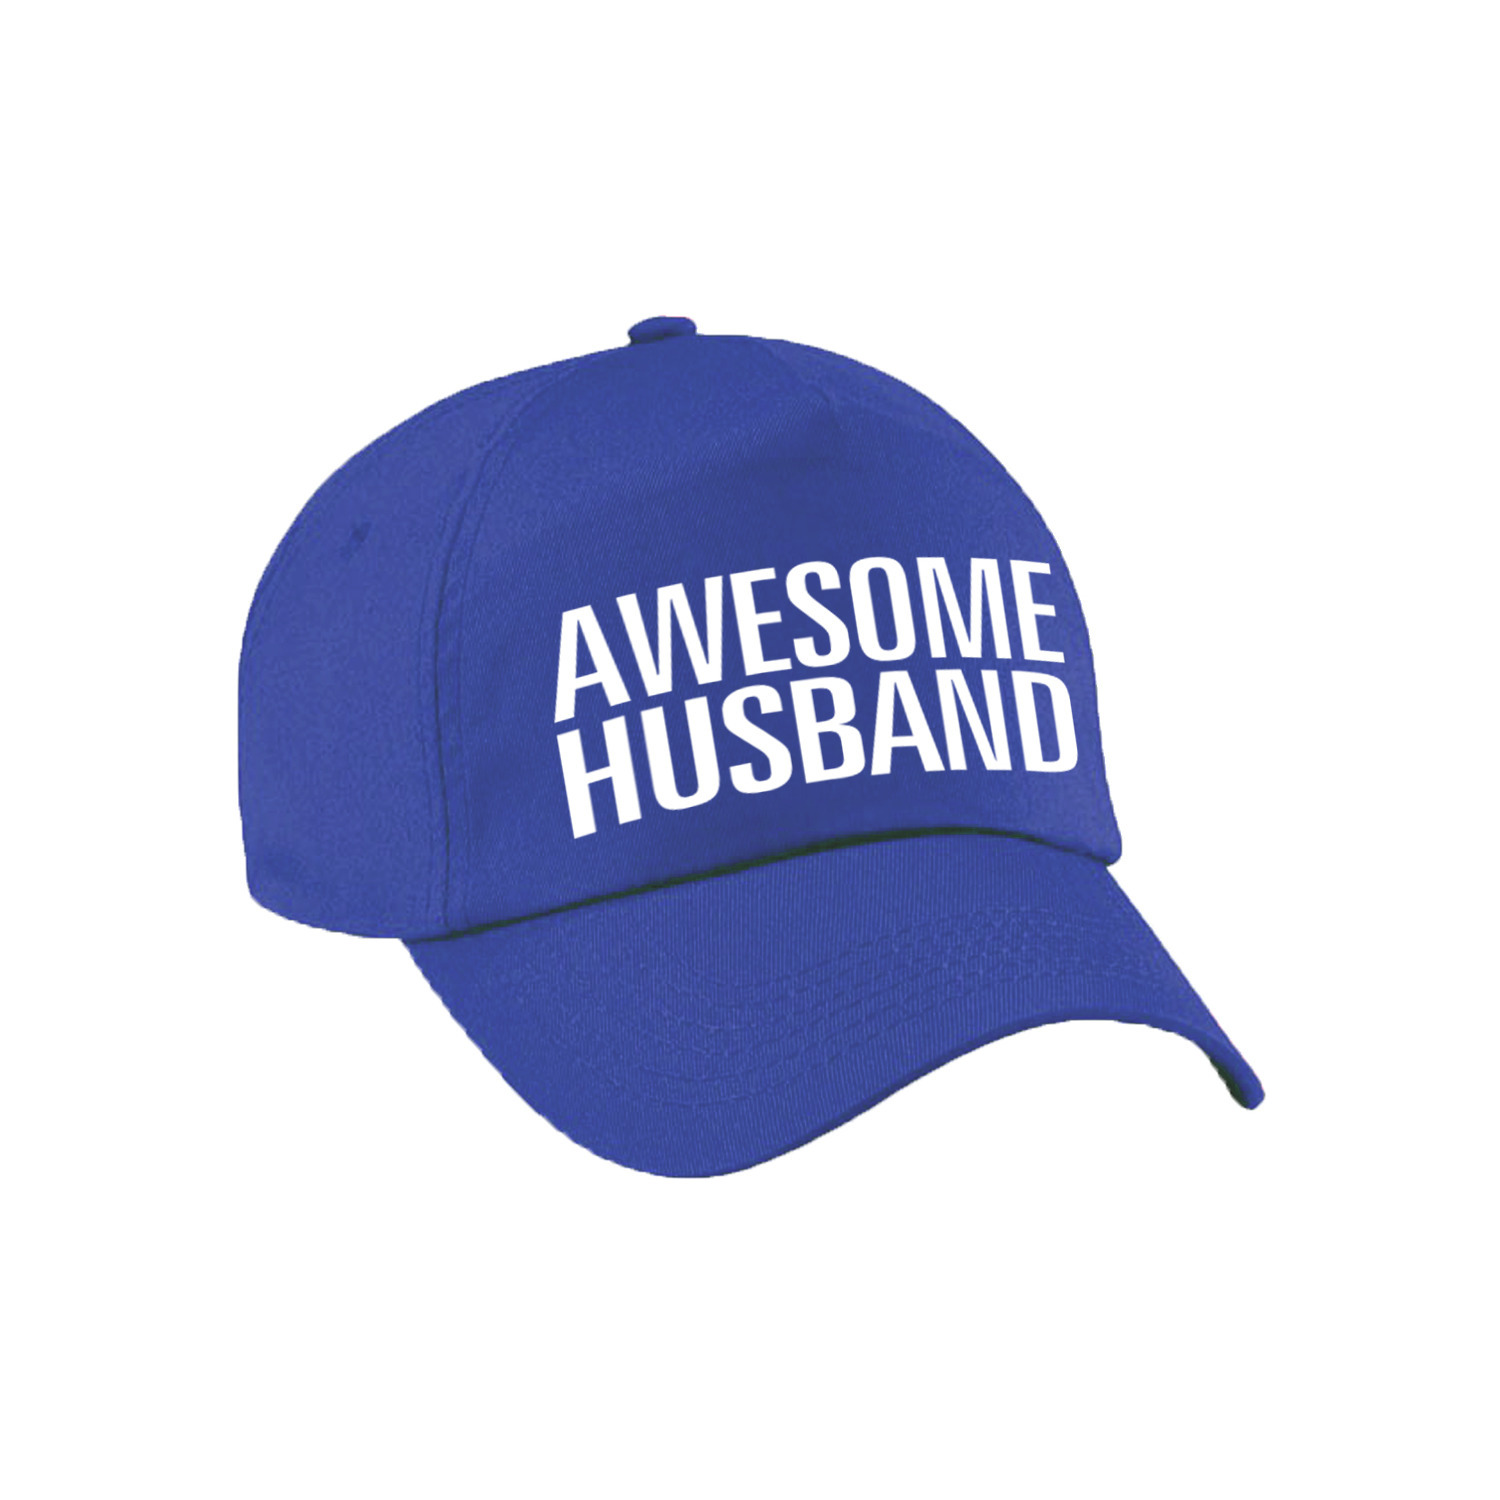 Awesome husband pet - cap voor echtgenoot - vriend blauw voor heren